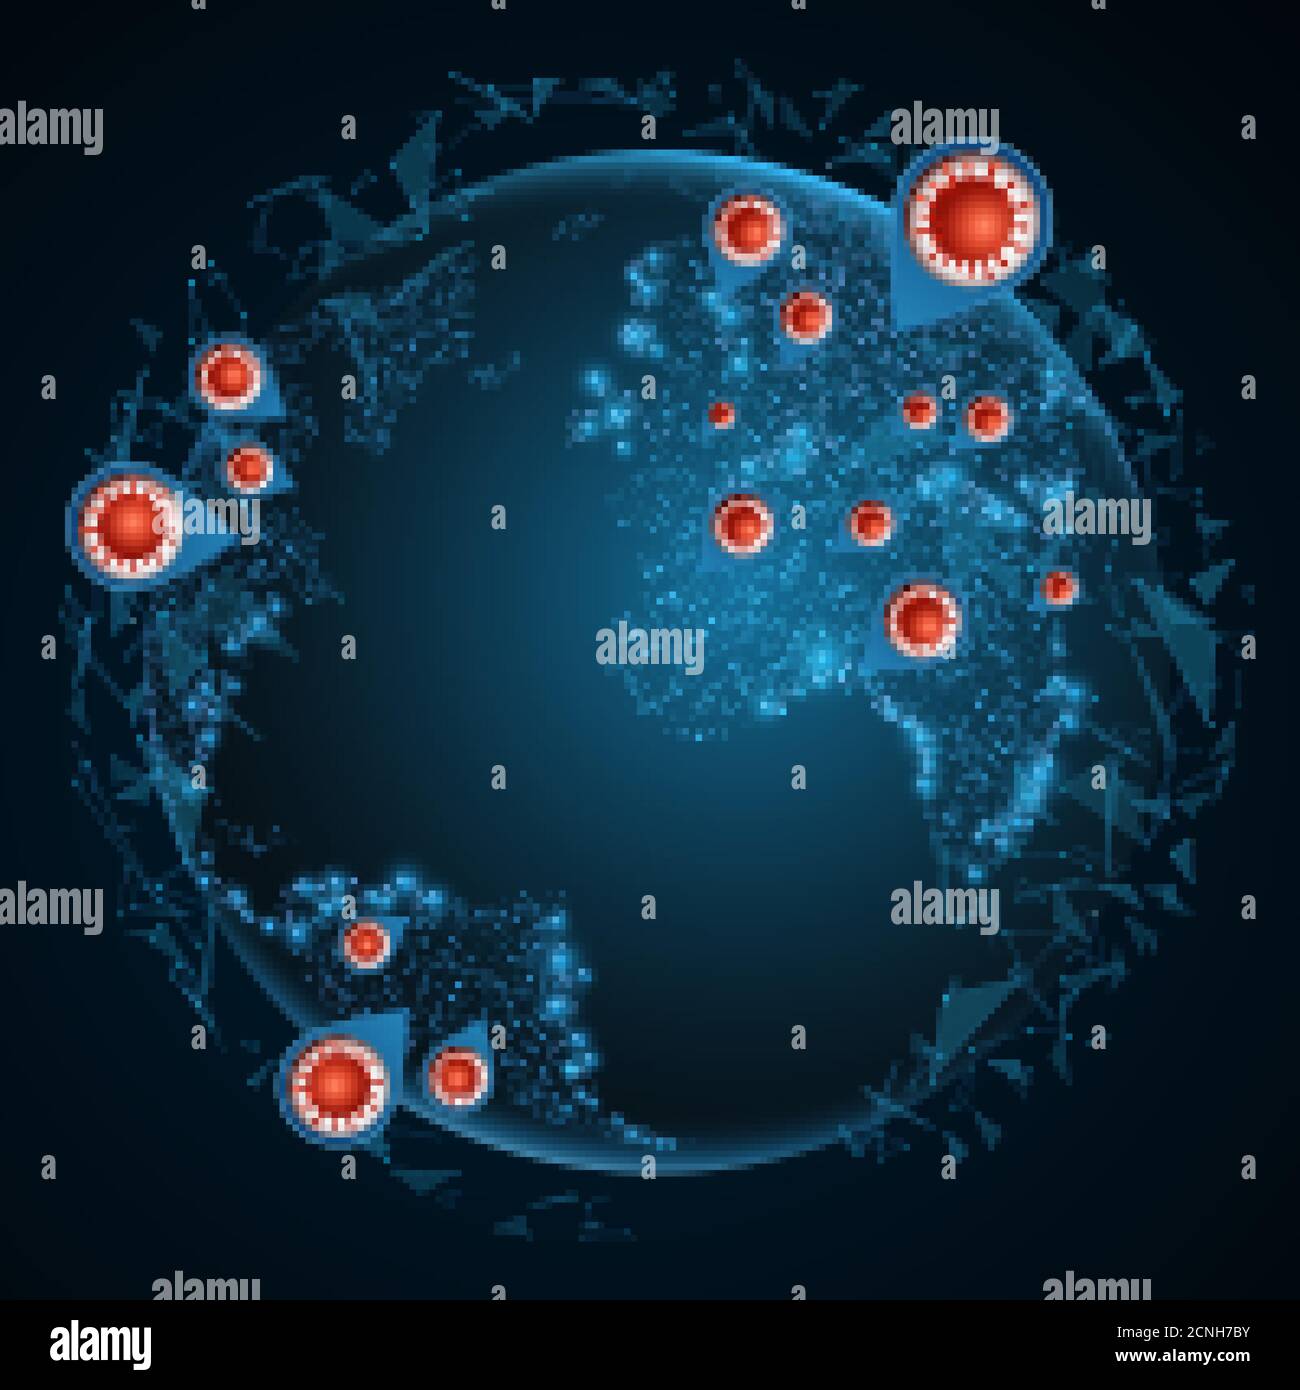 Globe terrestre de style futuriste avec bactéries coronavirus. Pandémie chinoise. Infection cellulaire dangereuse. Points infectés. Résumé lumineux infecté Illustration de Vecteur